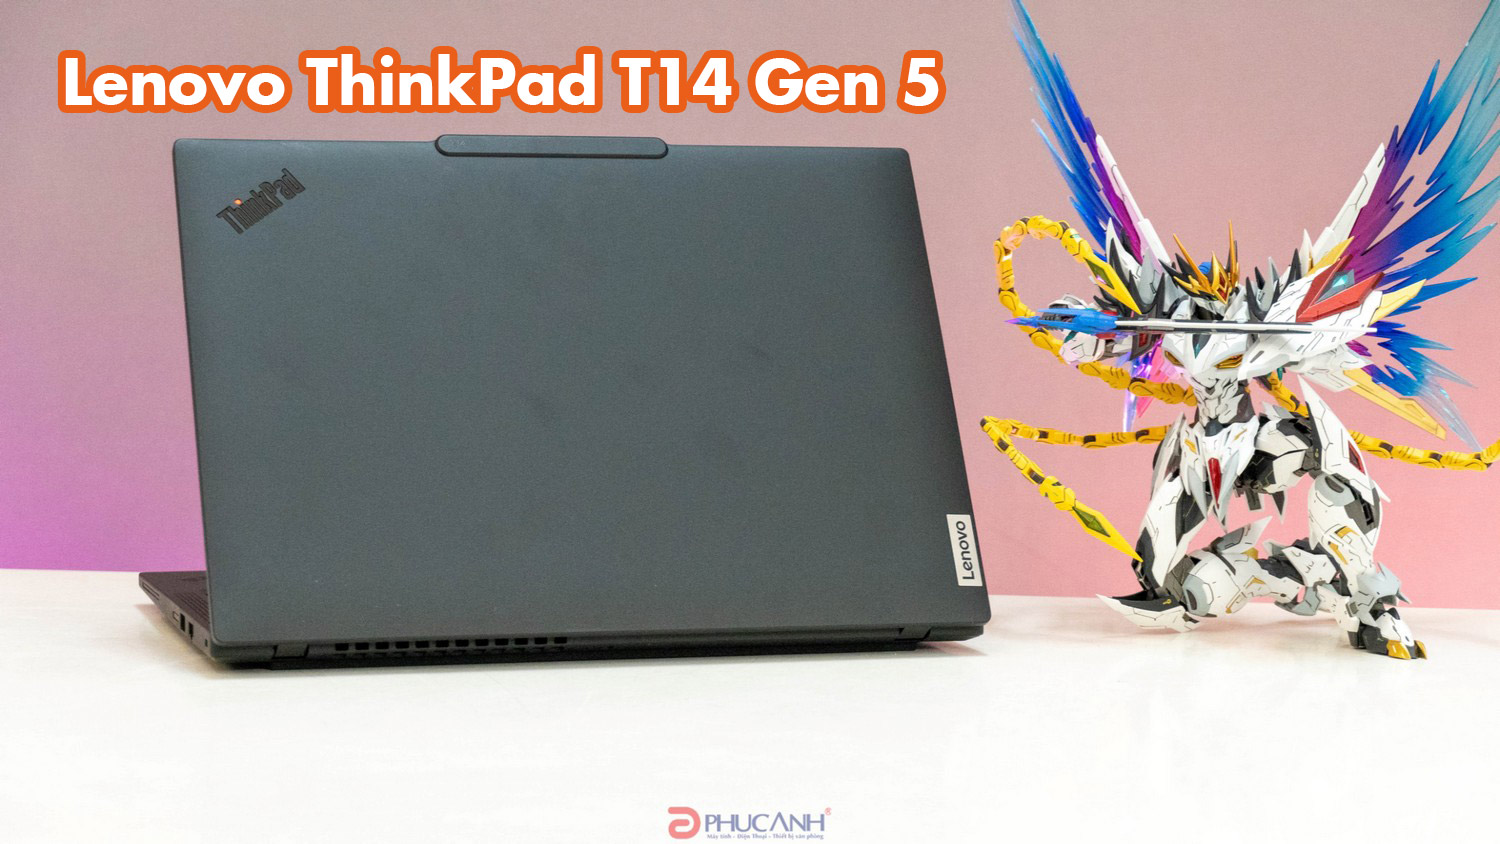 Đánh giá Lenovo ThinkPad T14 Gen 5 (14″ Intel) -  hiệu suất mạnh mẽ của bộ xử lý Intel Core Ultra, thiết kế siêu bền